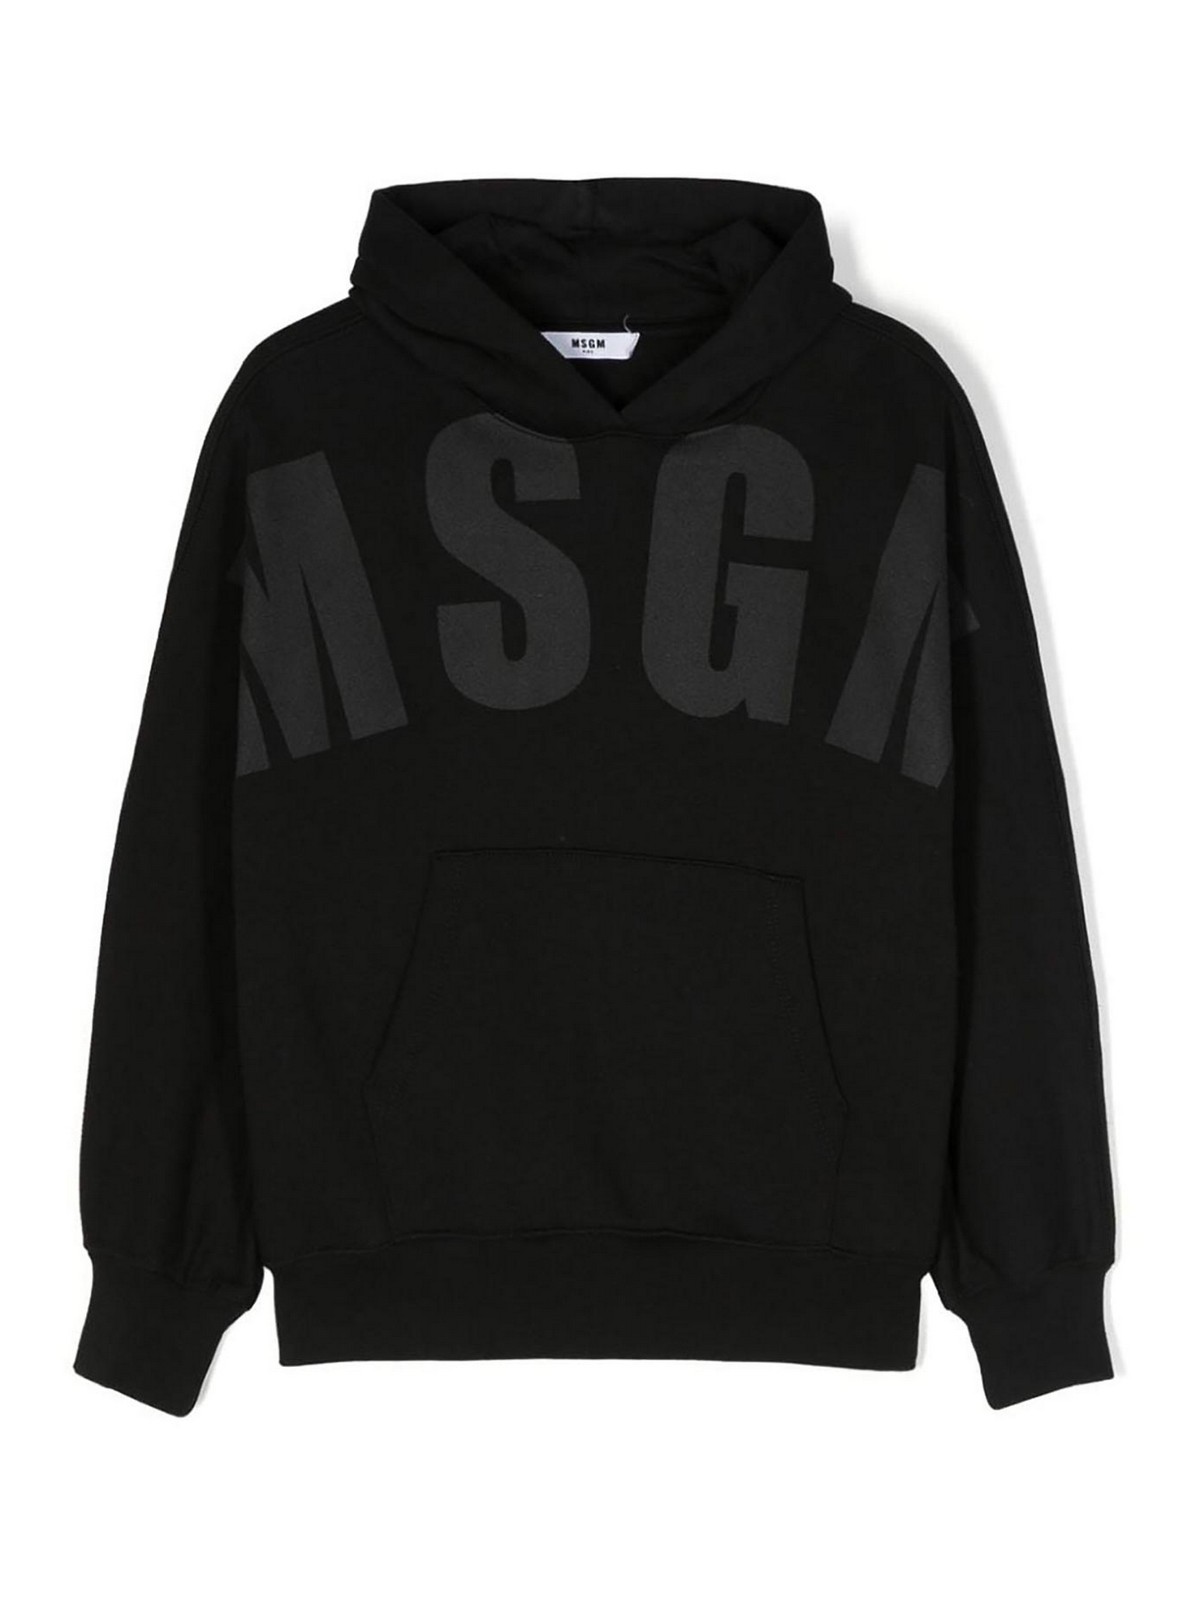 M.S.G.M. スウェットシャツ/セーター - 黒